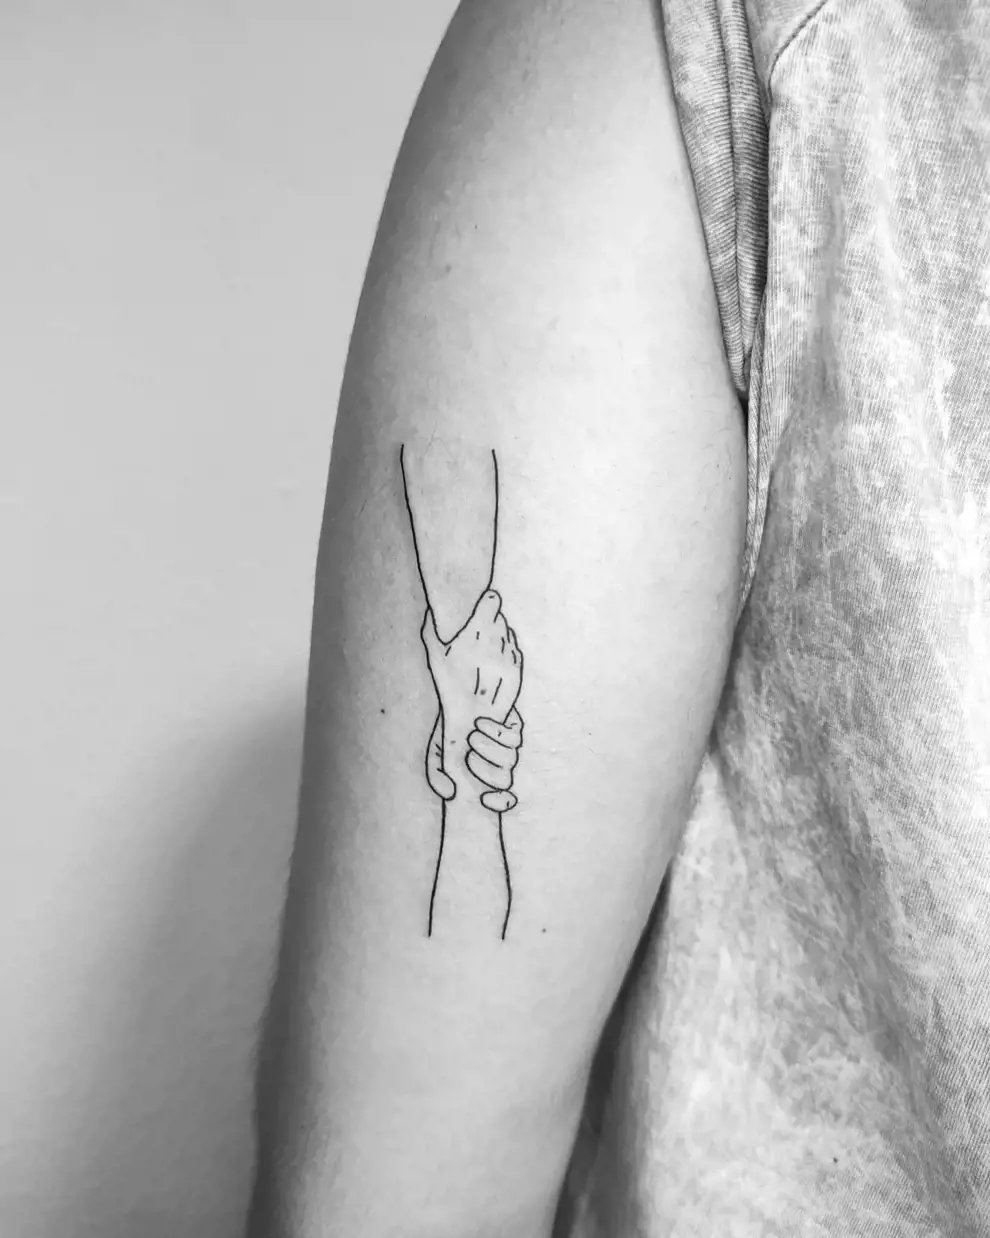 Tatuajes con significado: "No me sueltes nunca"